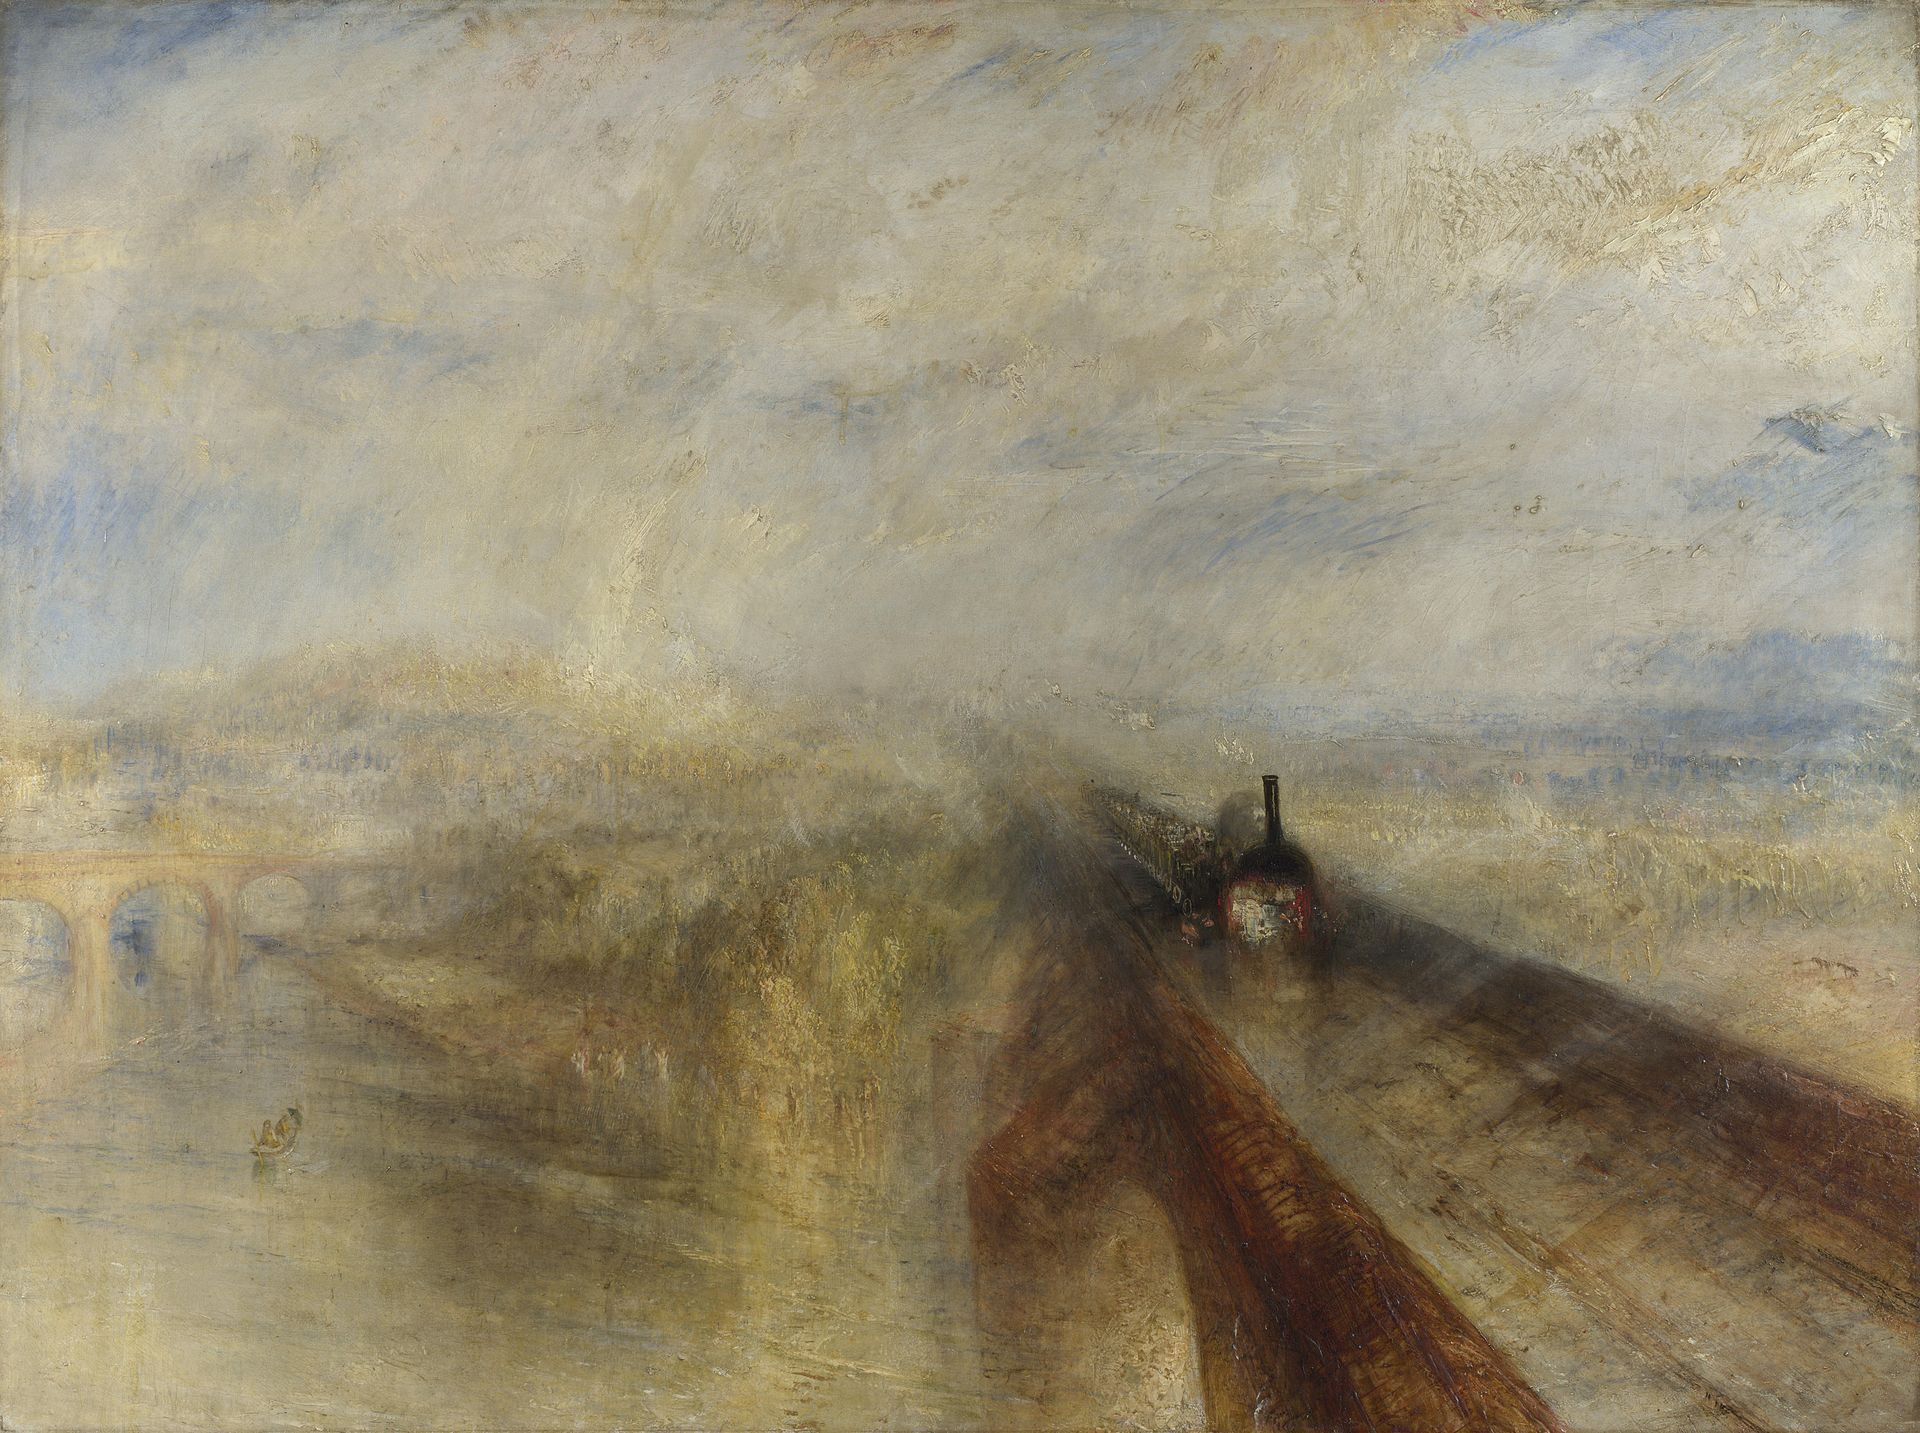 مطر وبخار وسرعة - السكك الحديدية الغربية الكبرى by Joseph Mallord William Turner - 1844 - 91 x 121.8 سم 